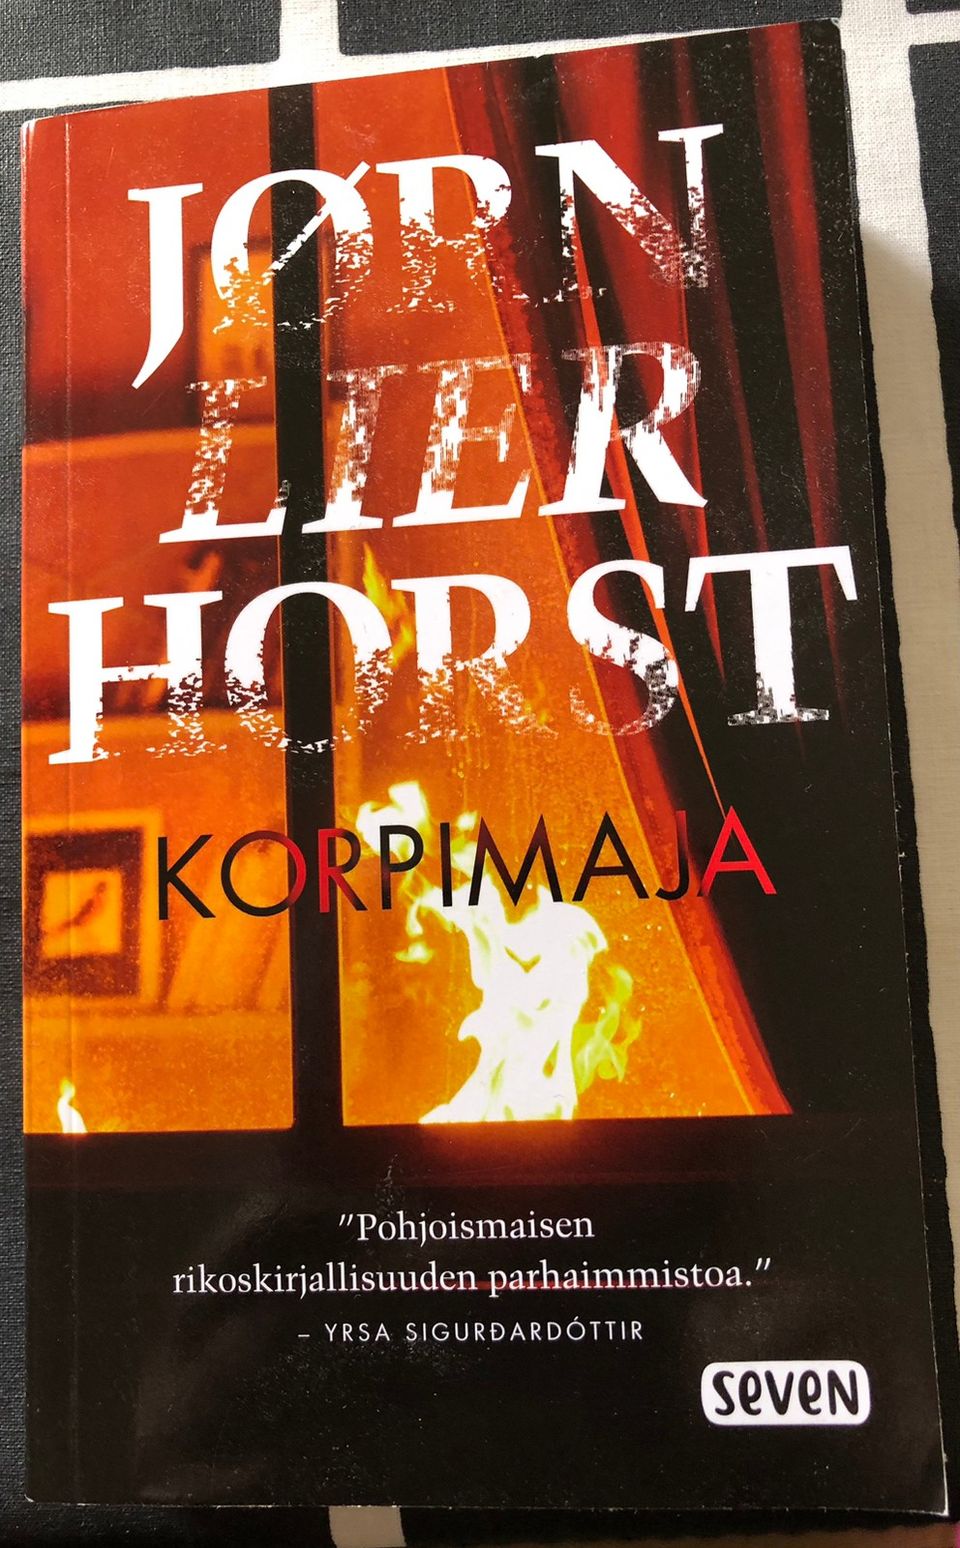 Jørn Lier Horst Korpimaja